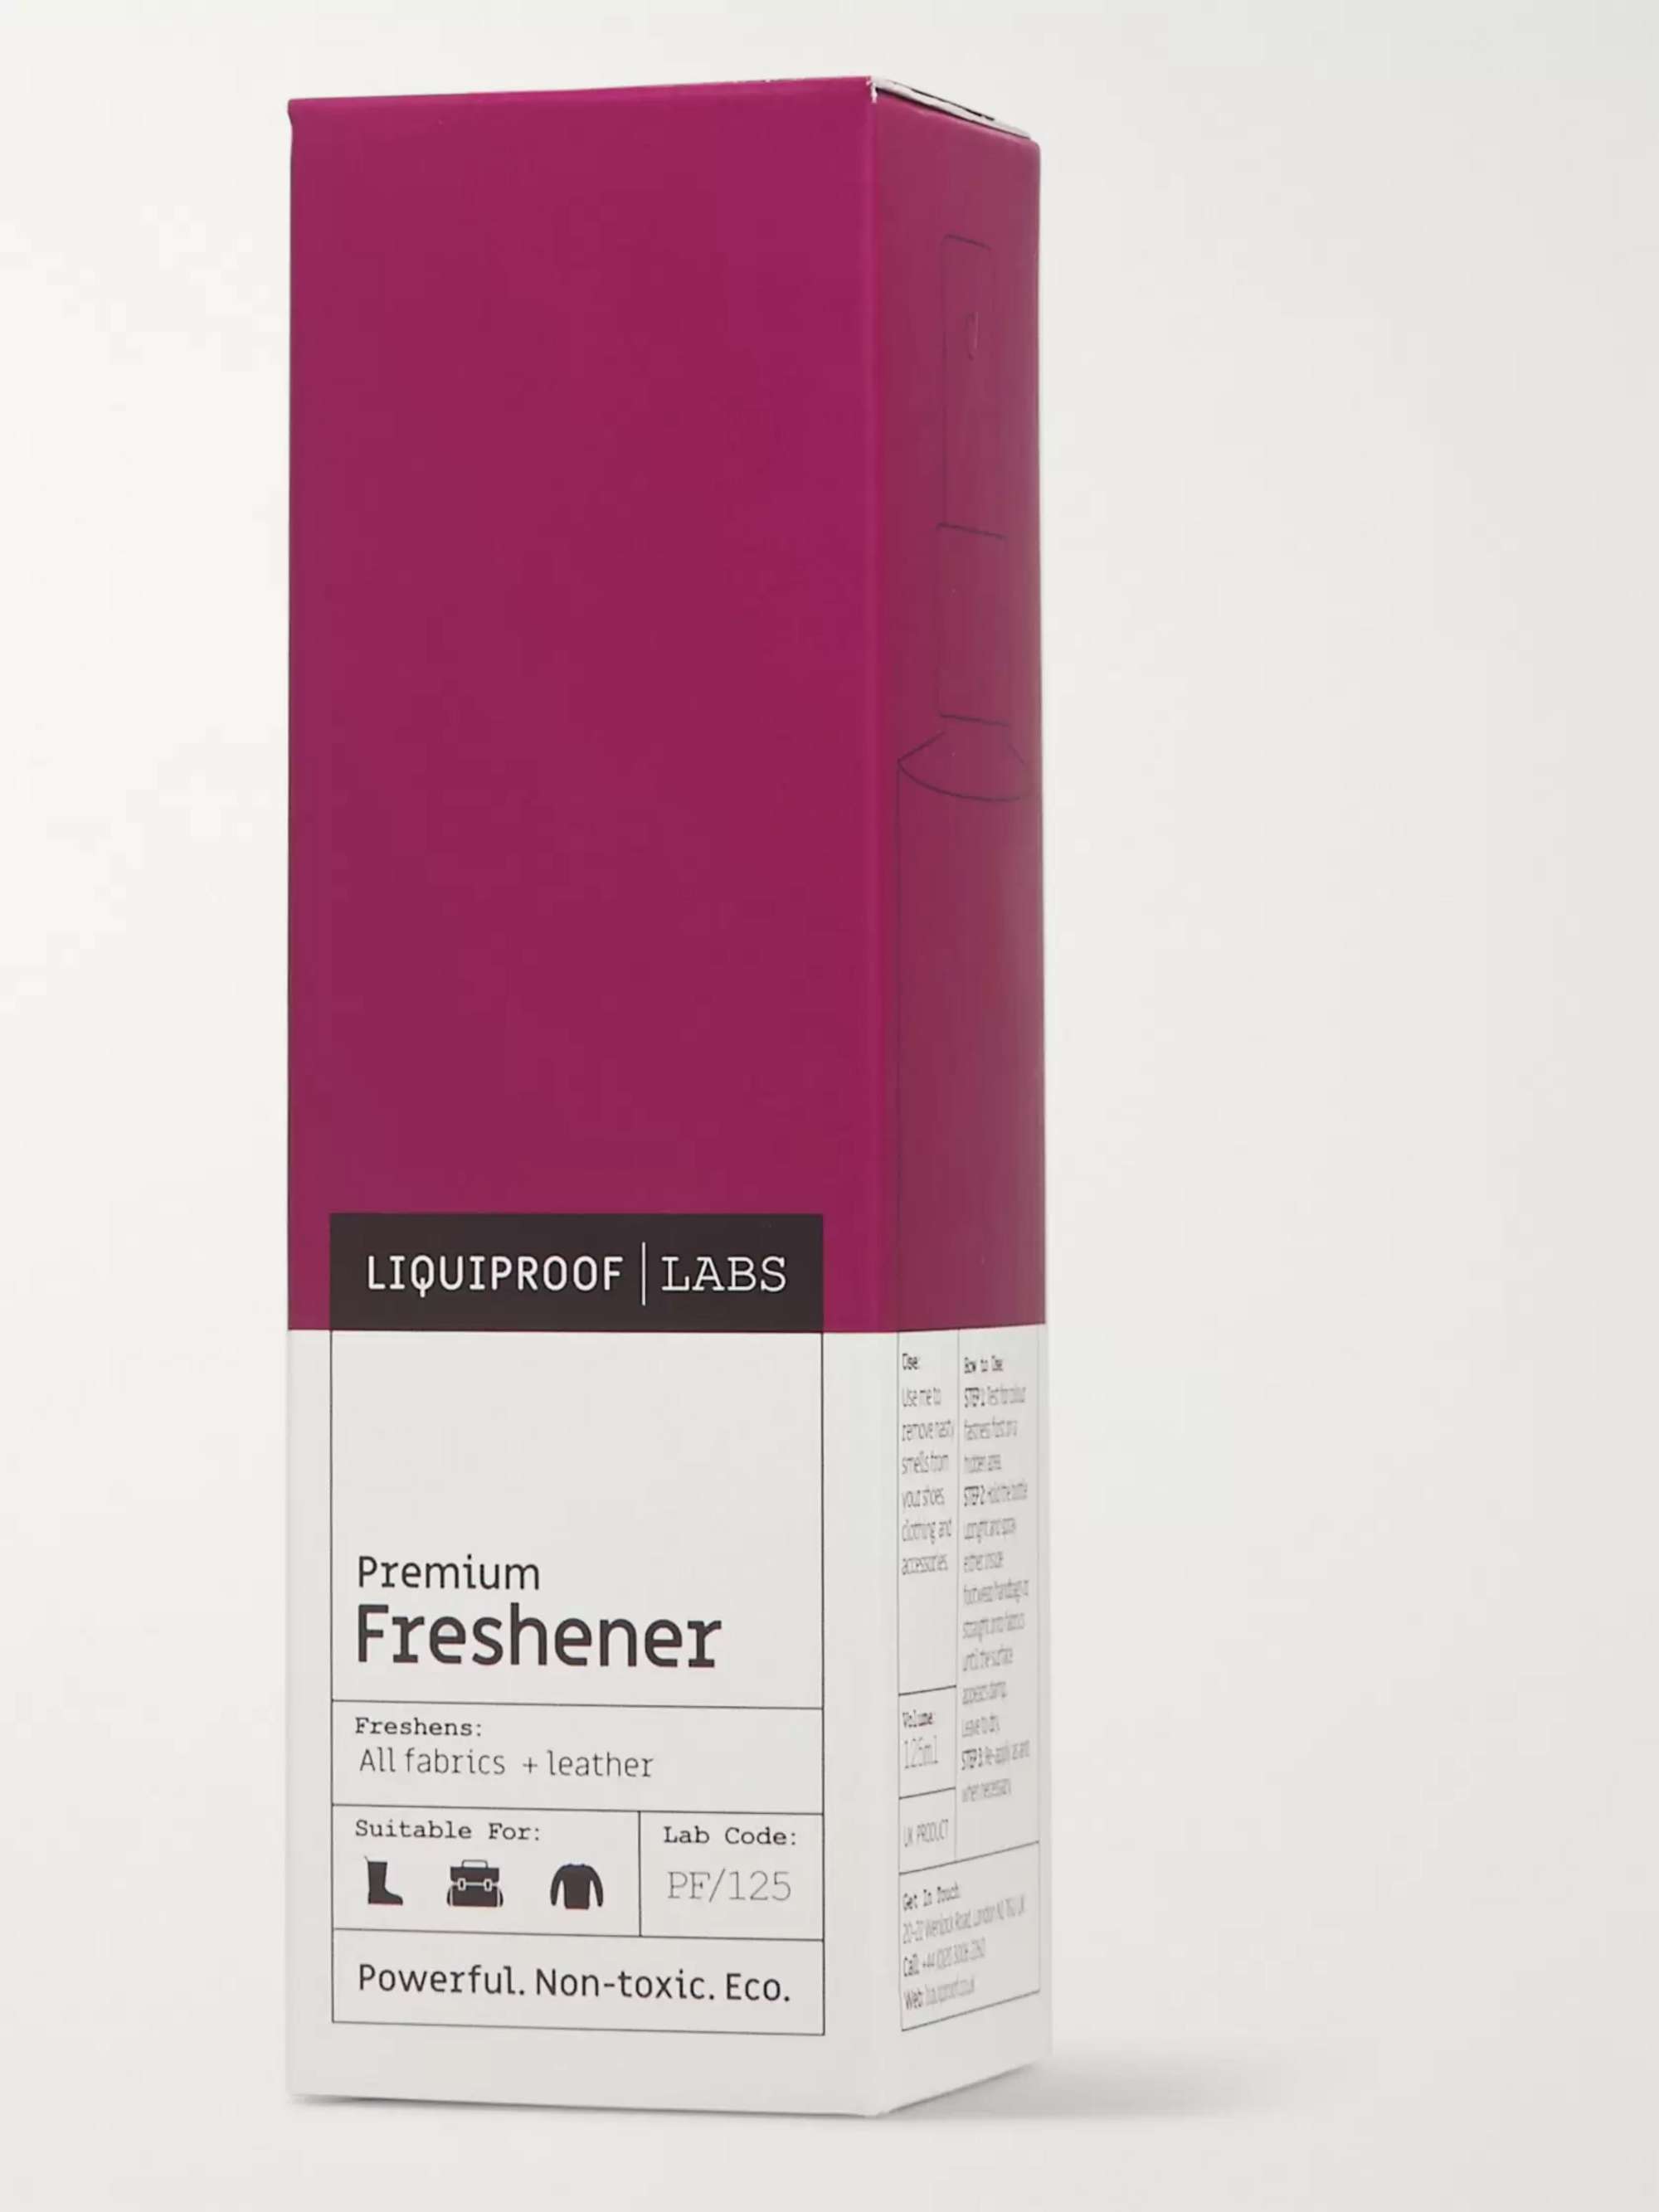 LIQUIPROOF LABS Premium Freshener, 125ml